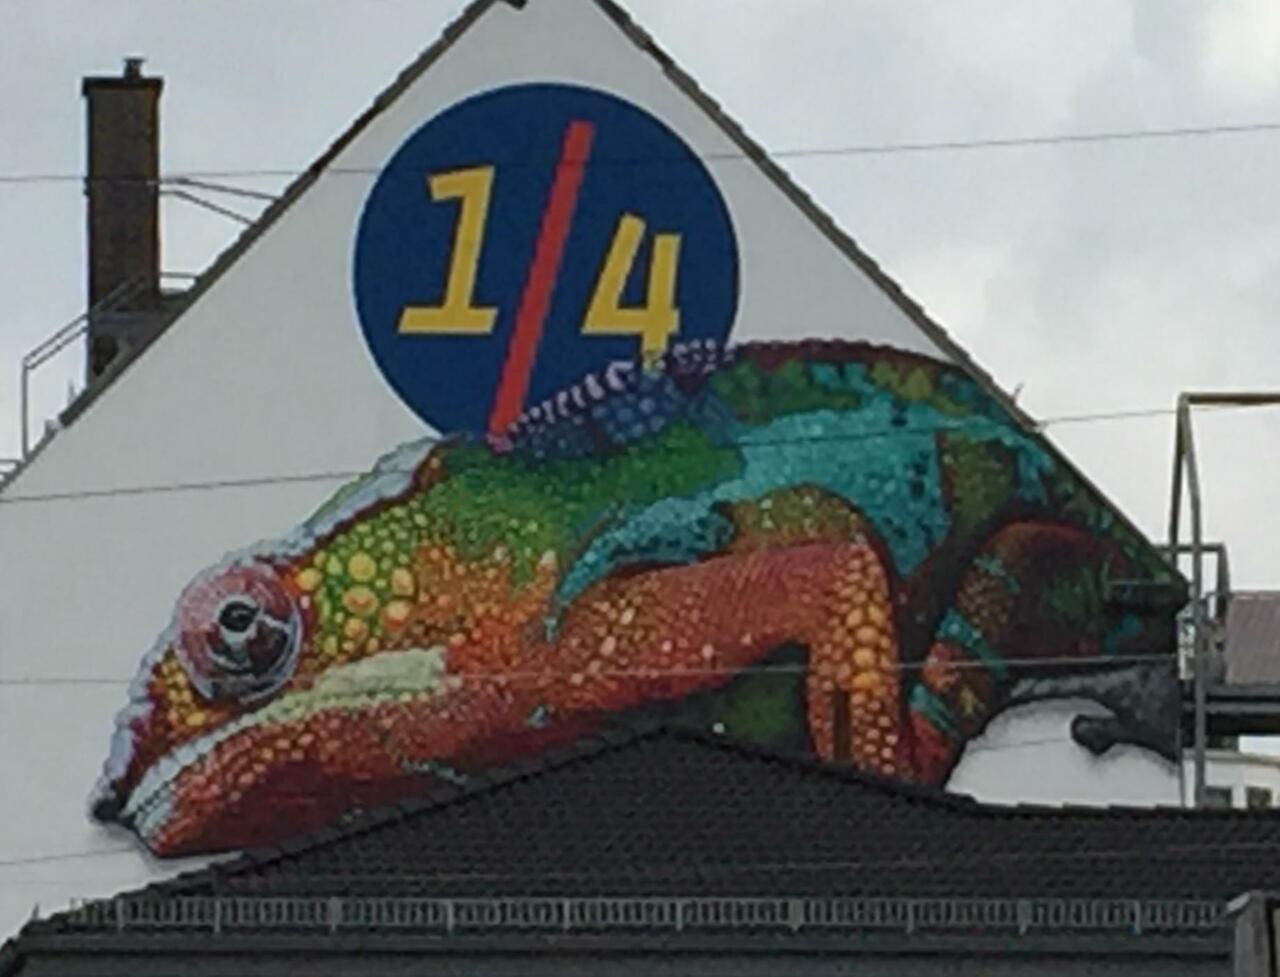 RT @Str33tArt: ...in Bremen//#streetart #Graffiti http://t.co/WnSKbbbHuV